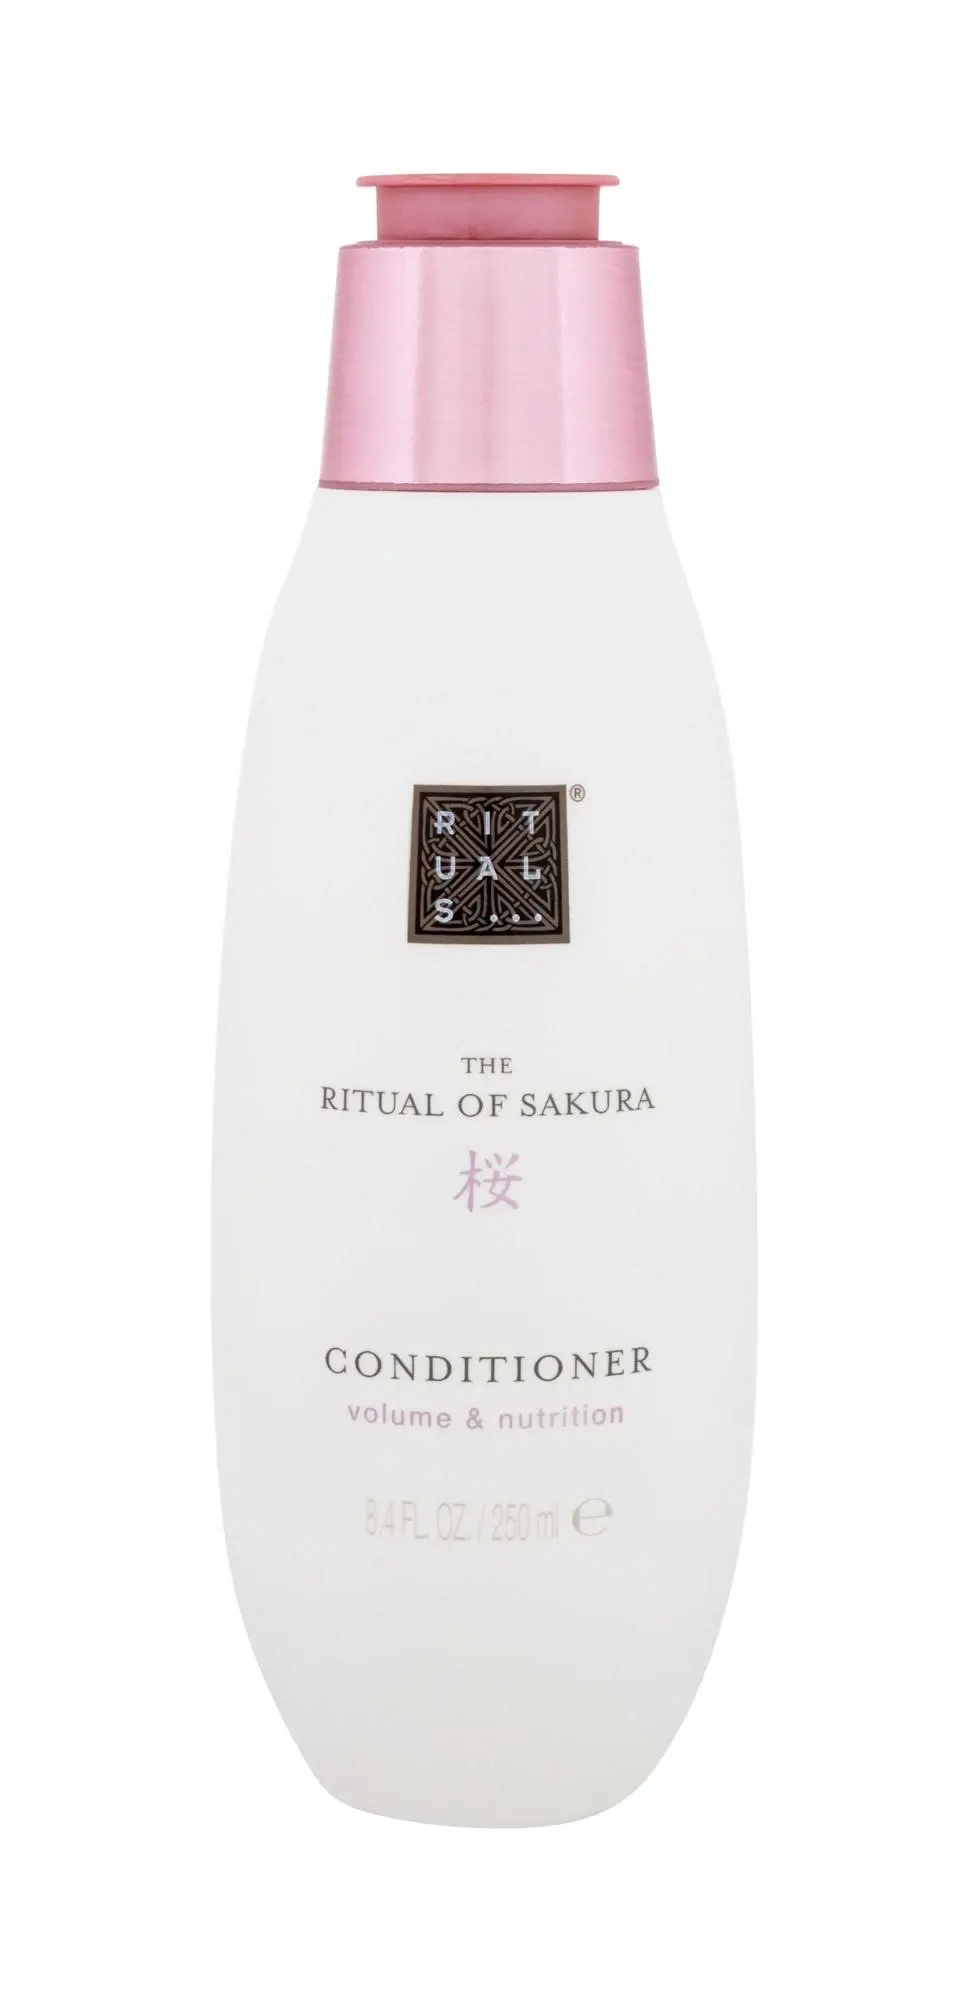 Rituals - The Ritual of Sakura Conditioner 250 ml